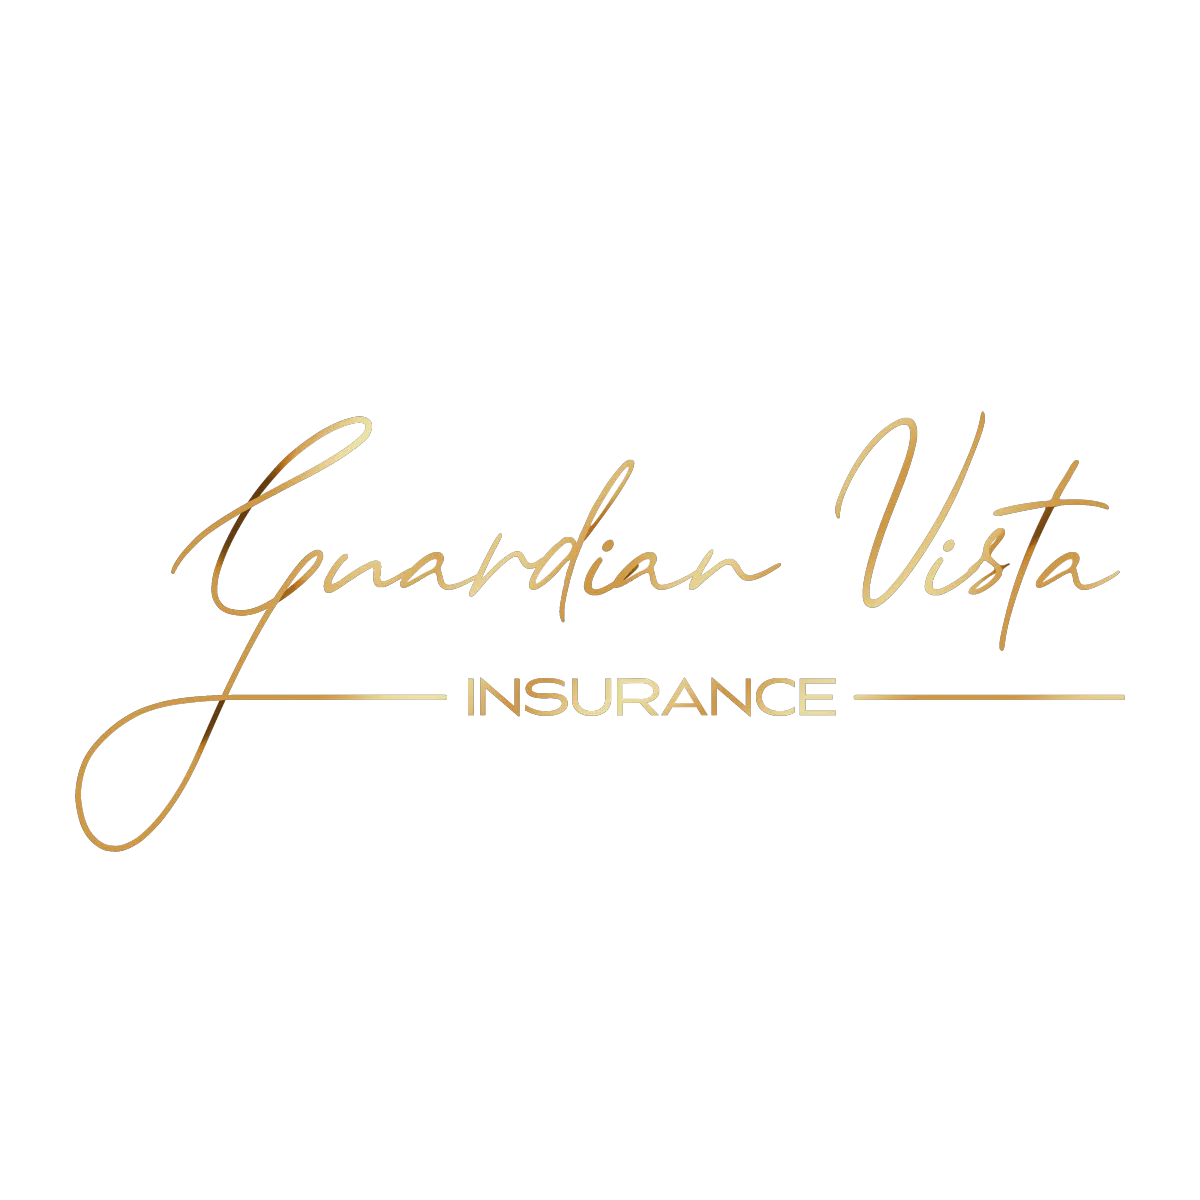 Guardian Vista Logo